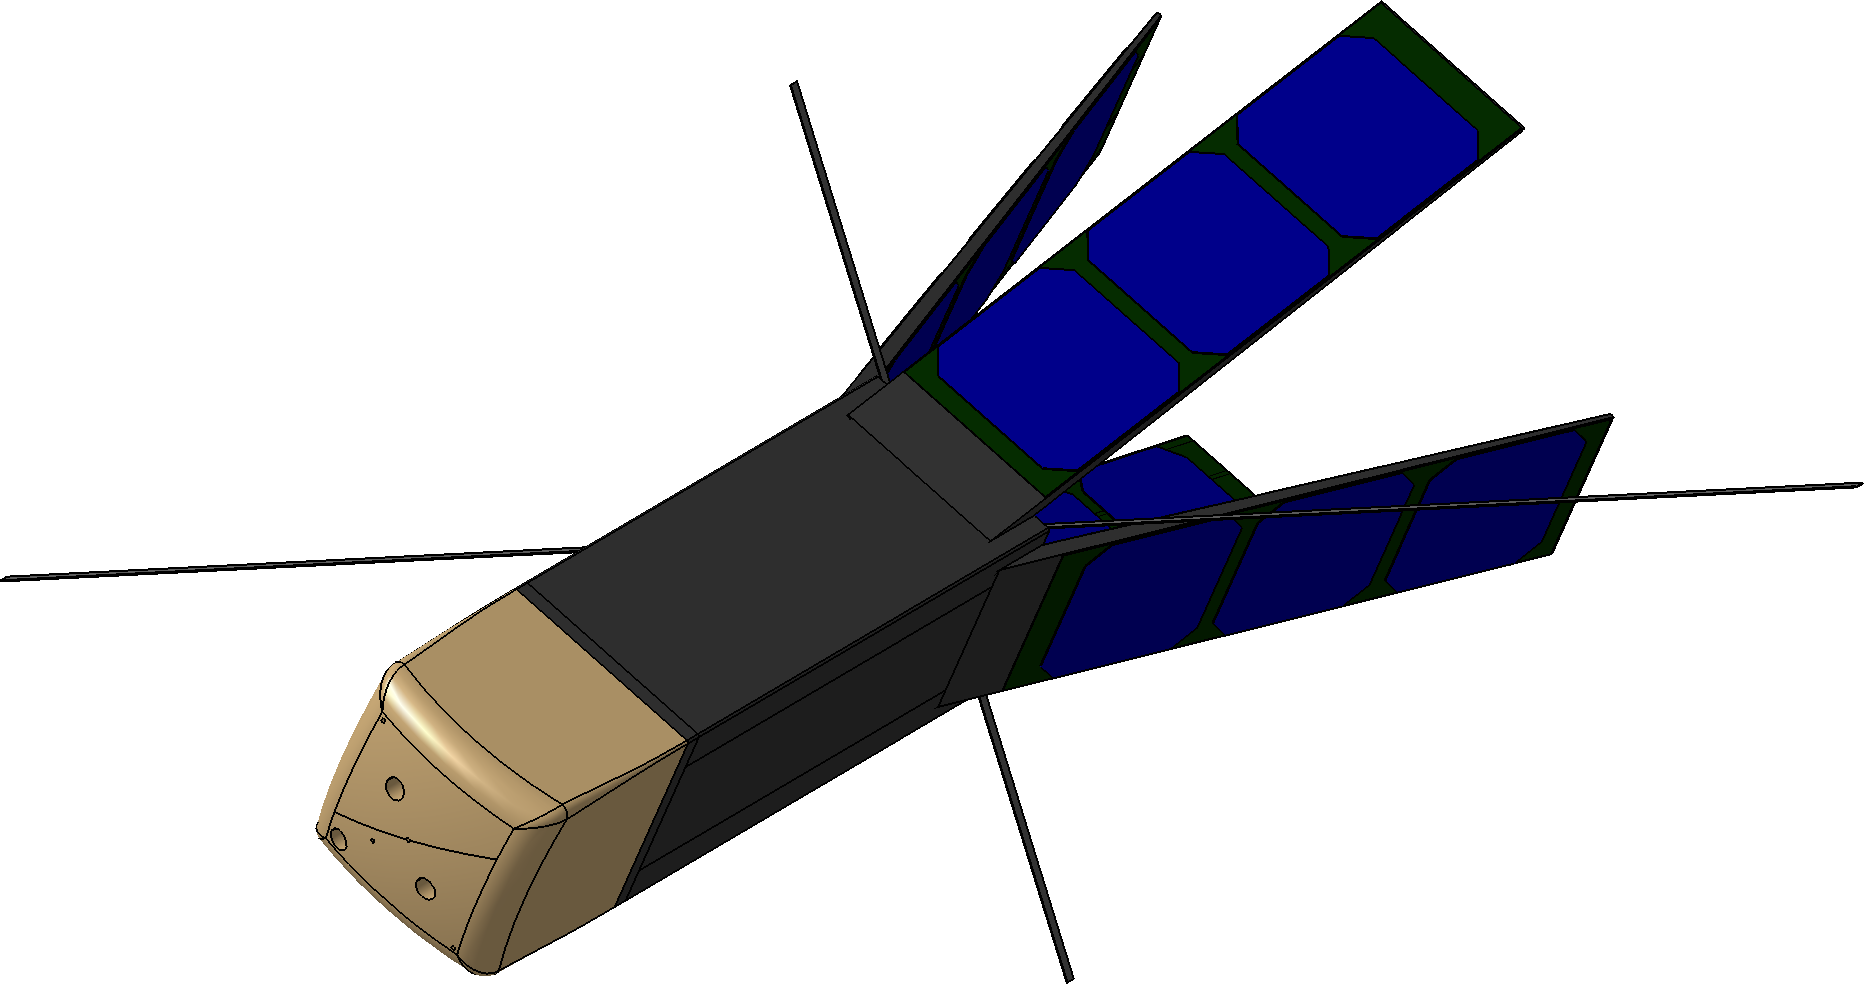 QUARMAN satellite CubeSat